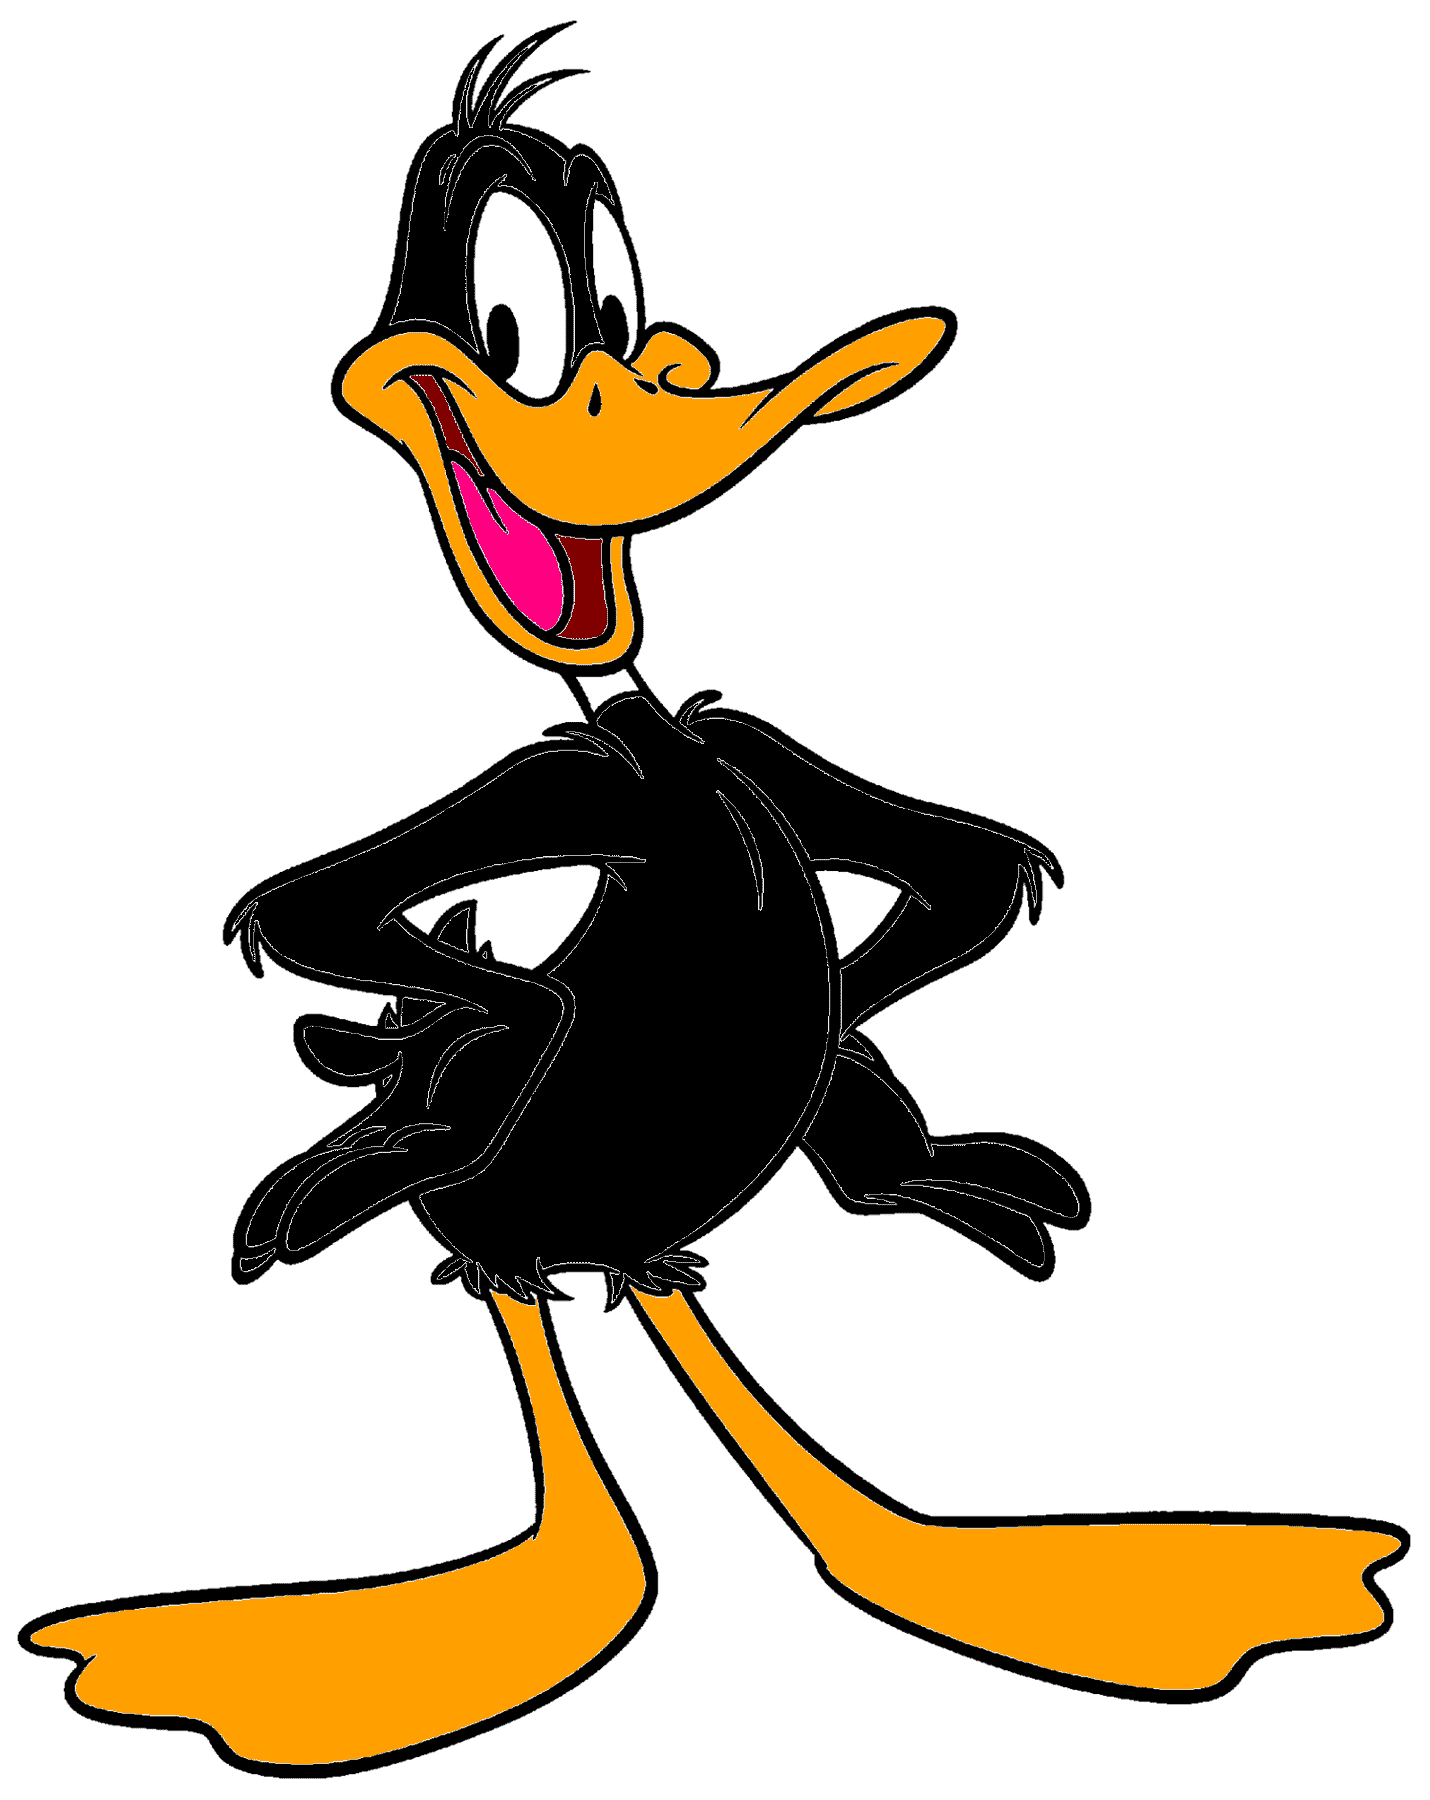 Daffy duck cartoom wallpaper-